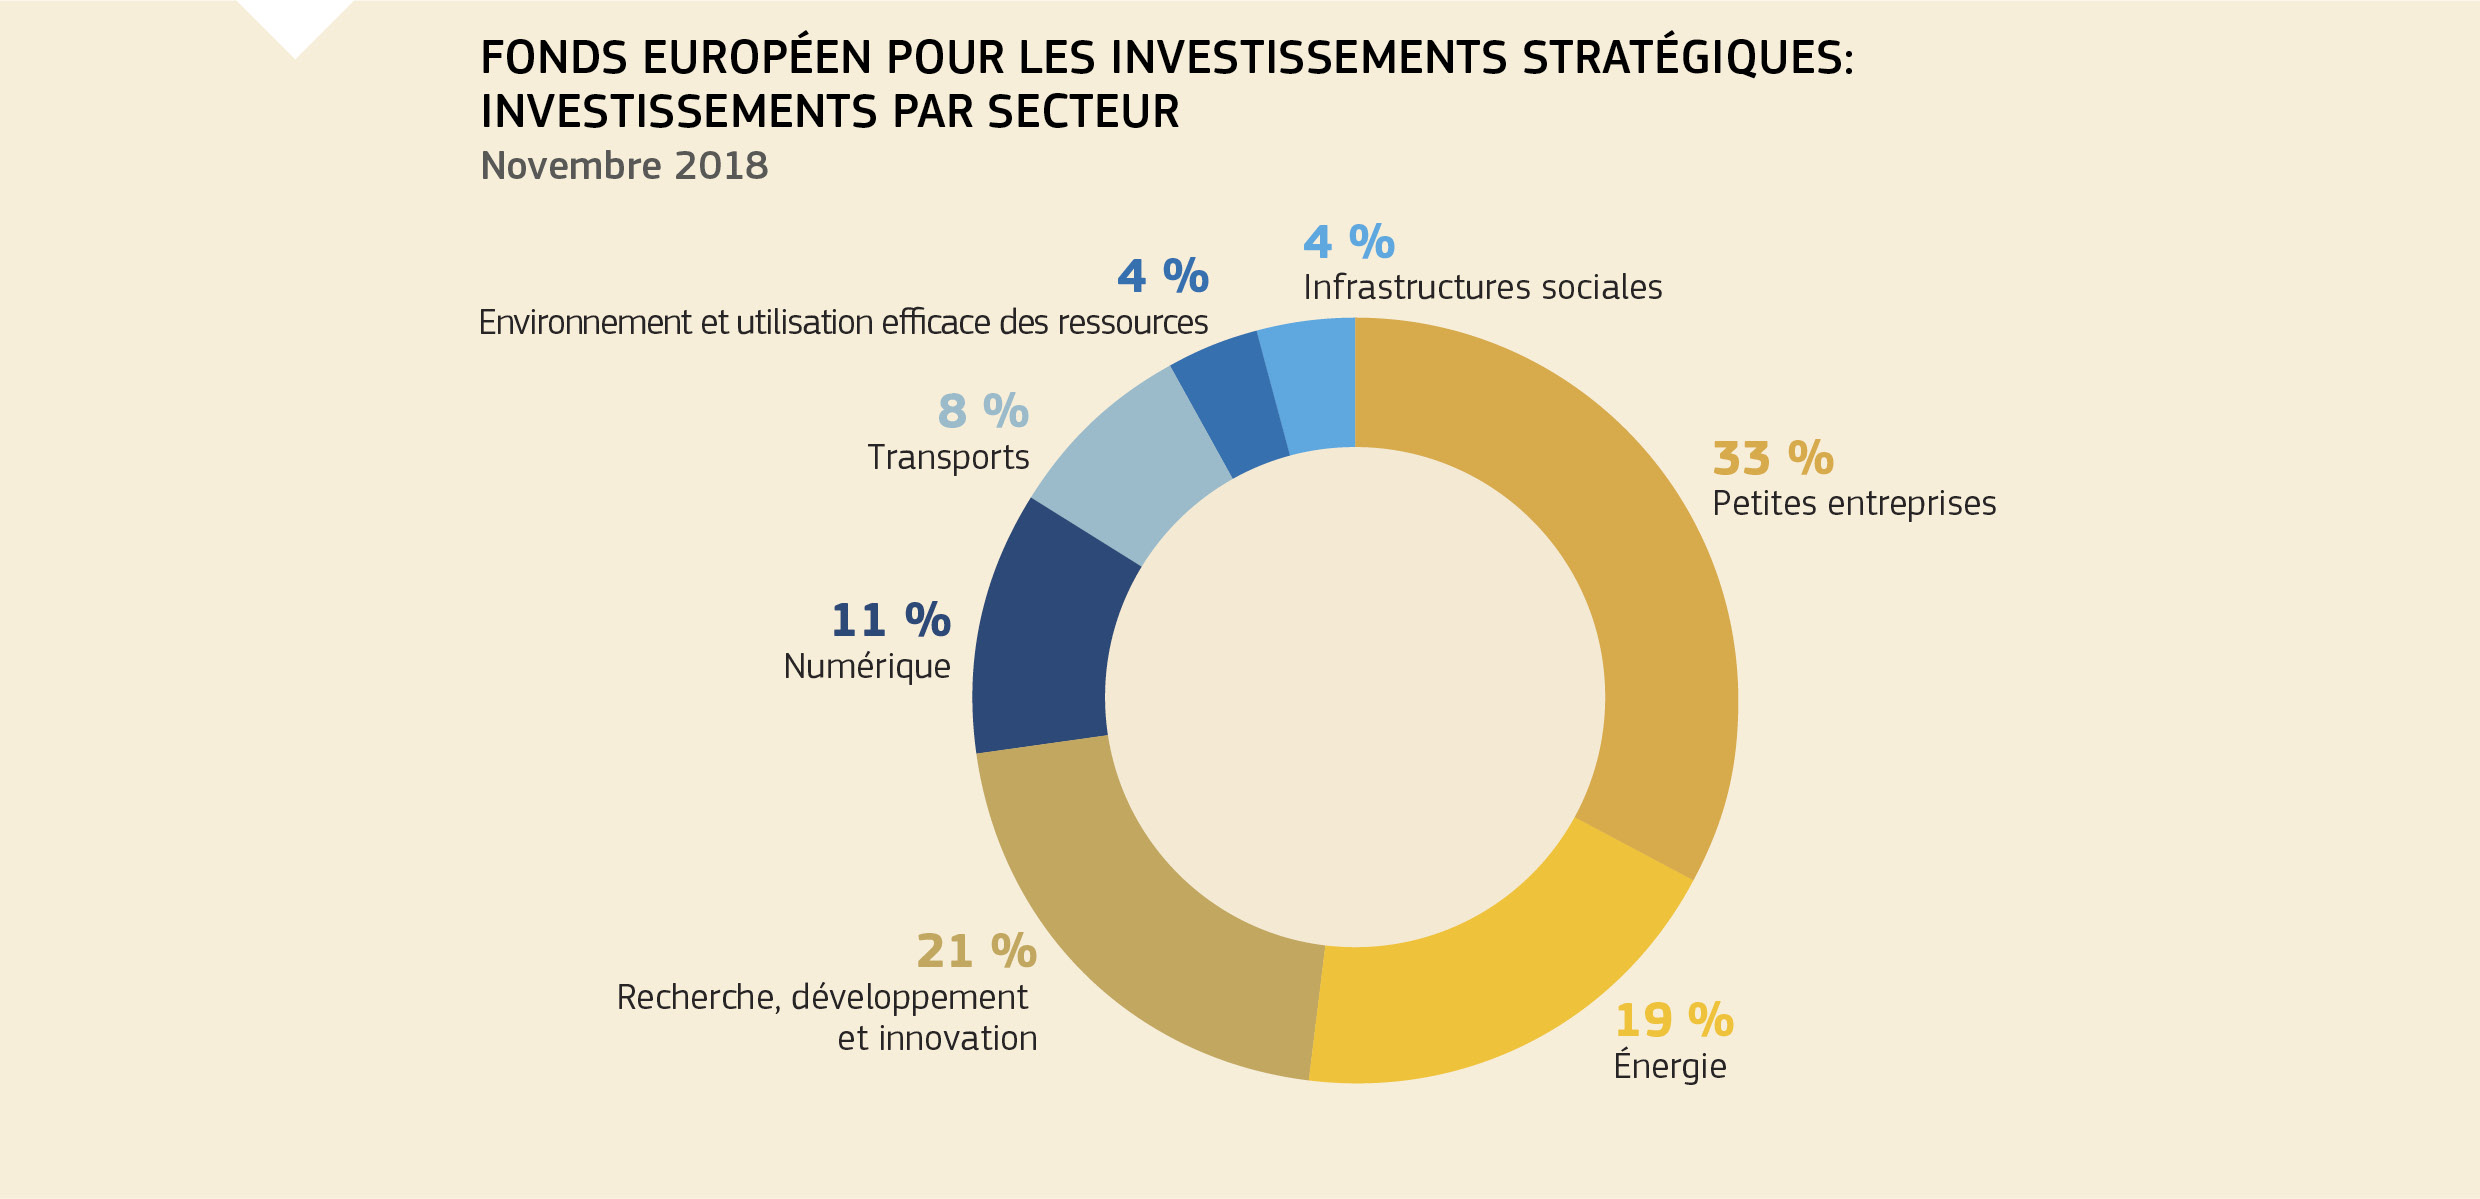 FONDS EUROPÉEN POUR LES INVESTISSEMENTS STRATÉGIQUES: INVESTISSEMENTS PAR SECTEUR